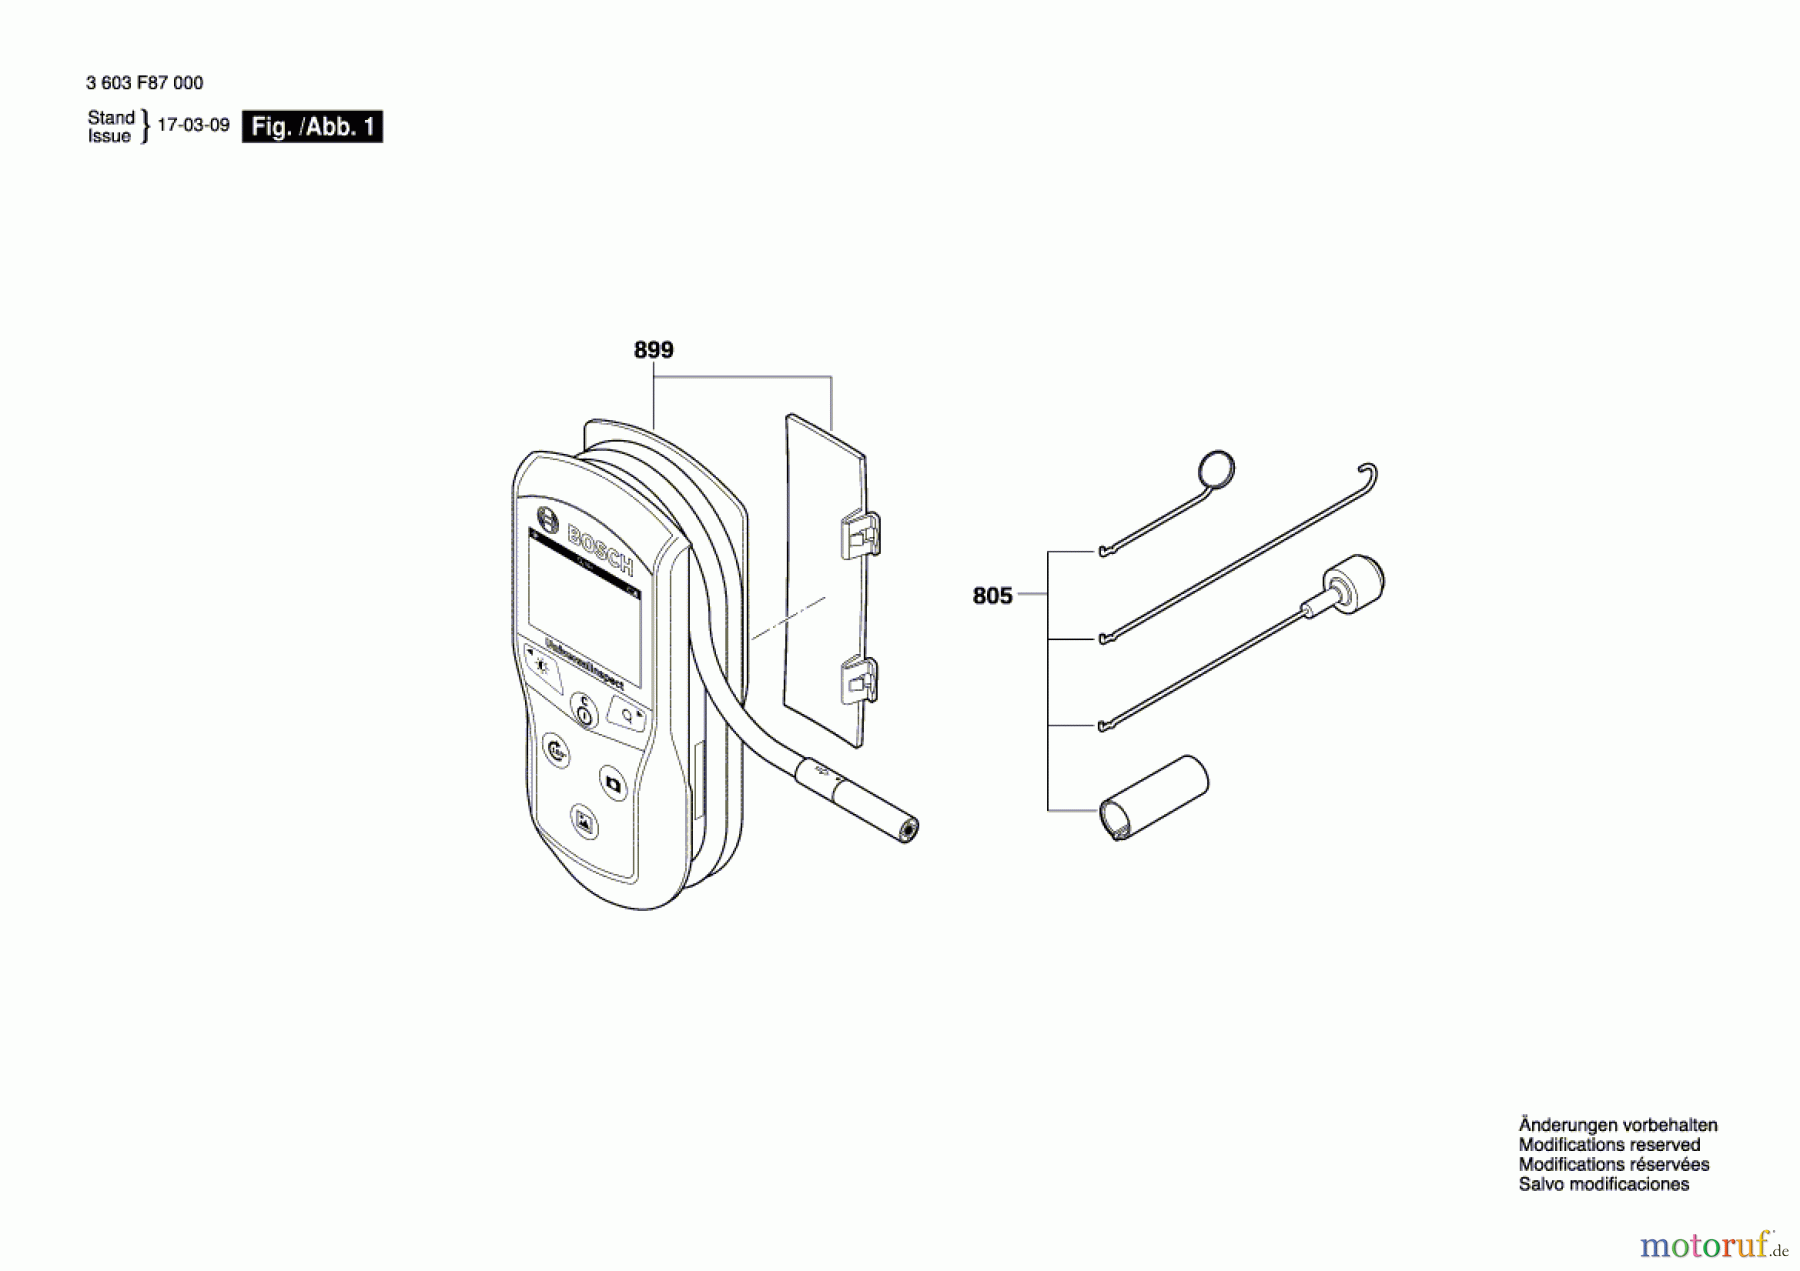  Bosch Werkzeug Endoskop UniversalInspect Seite 1